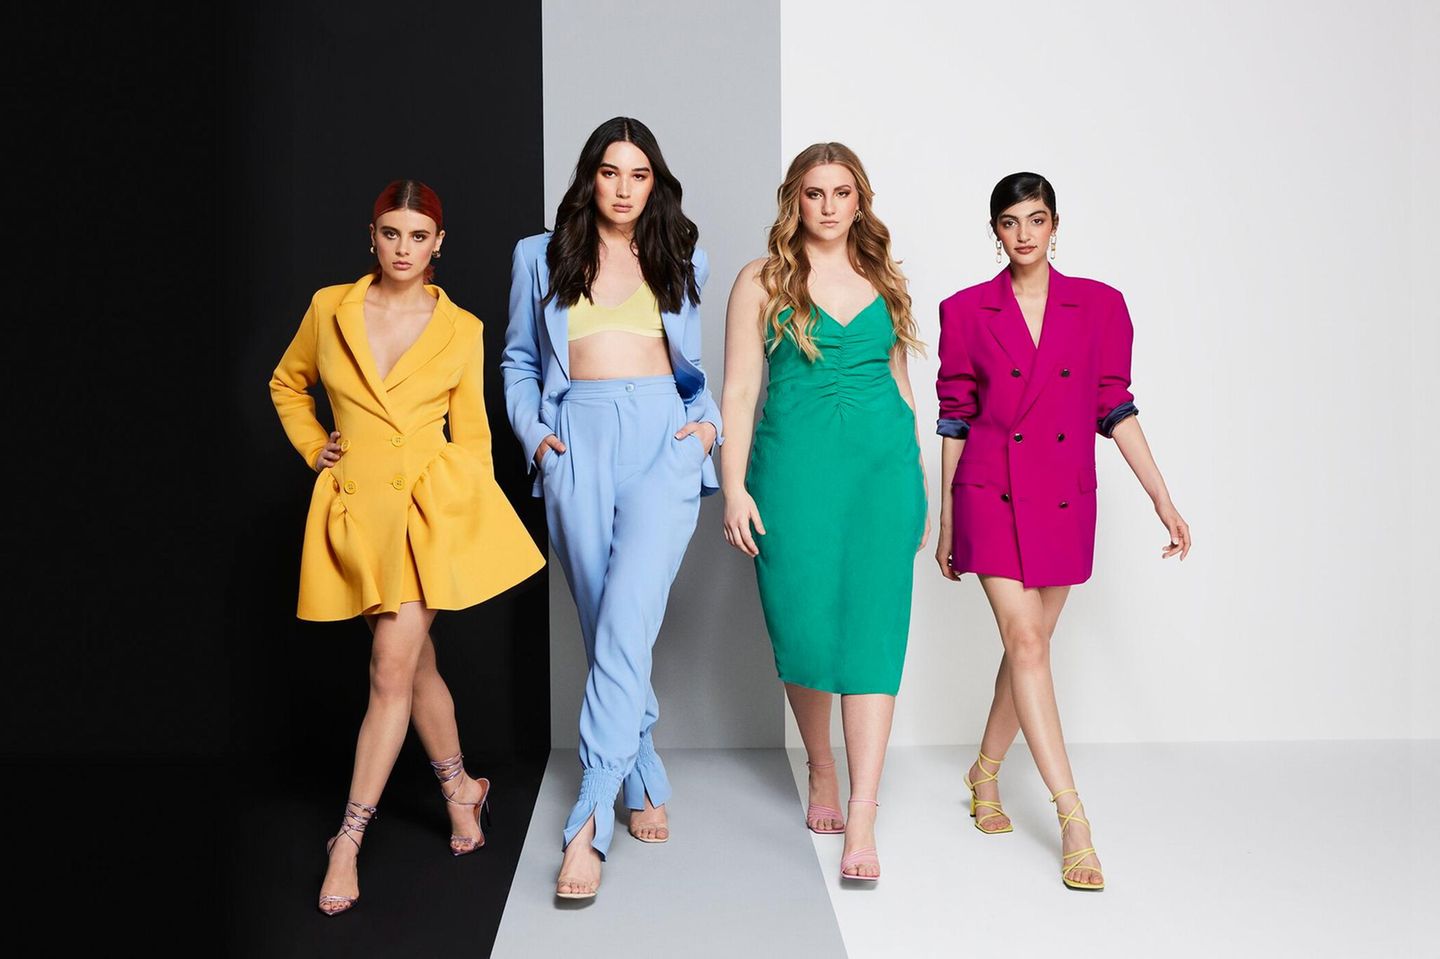 Romina, Alex, Dascha und Soulin kämpfen um den Titel "Germany's Next Topmodel"